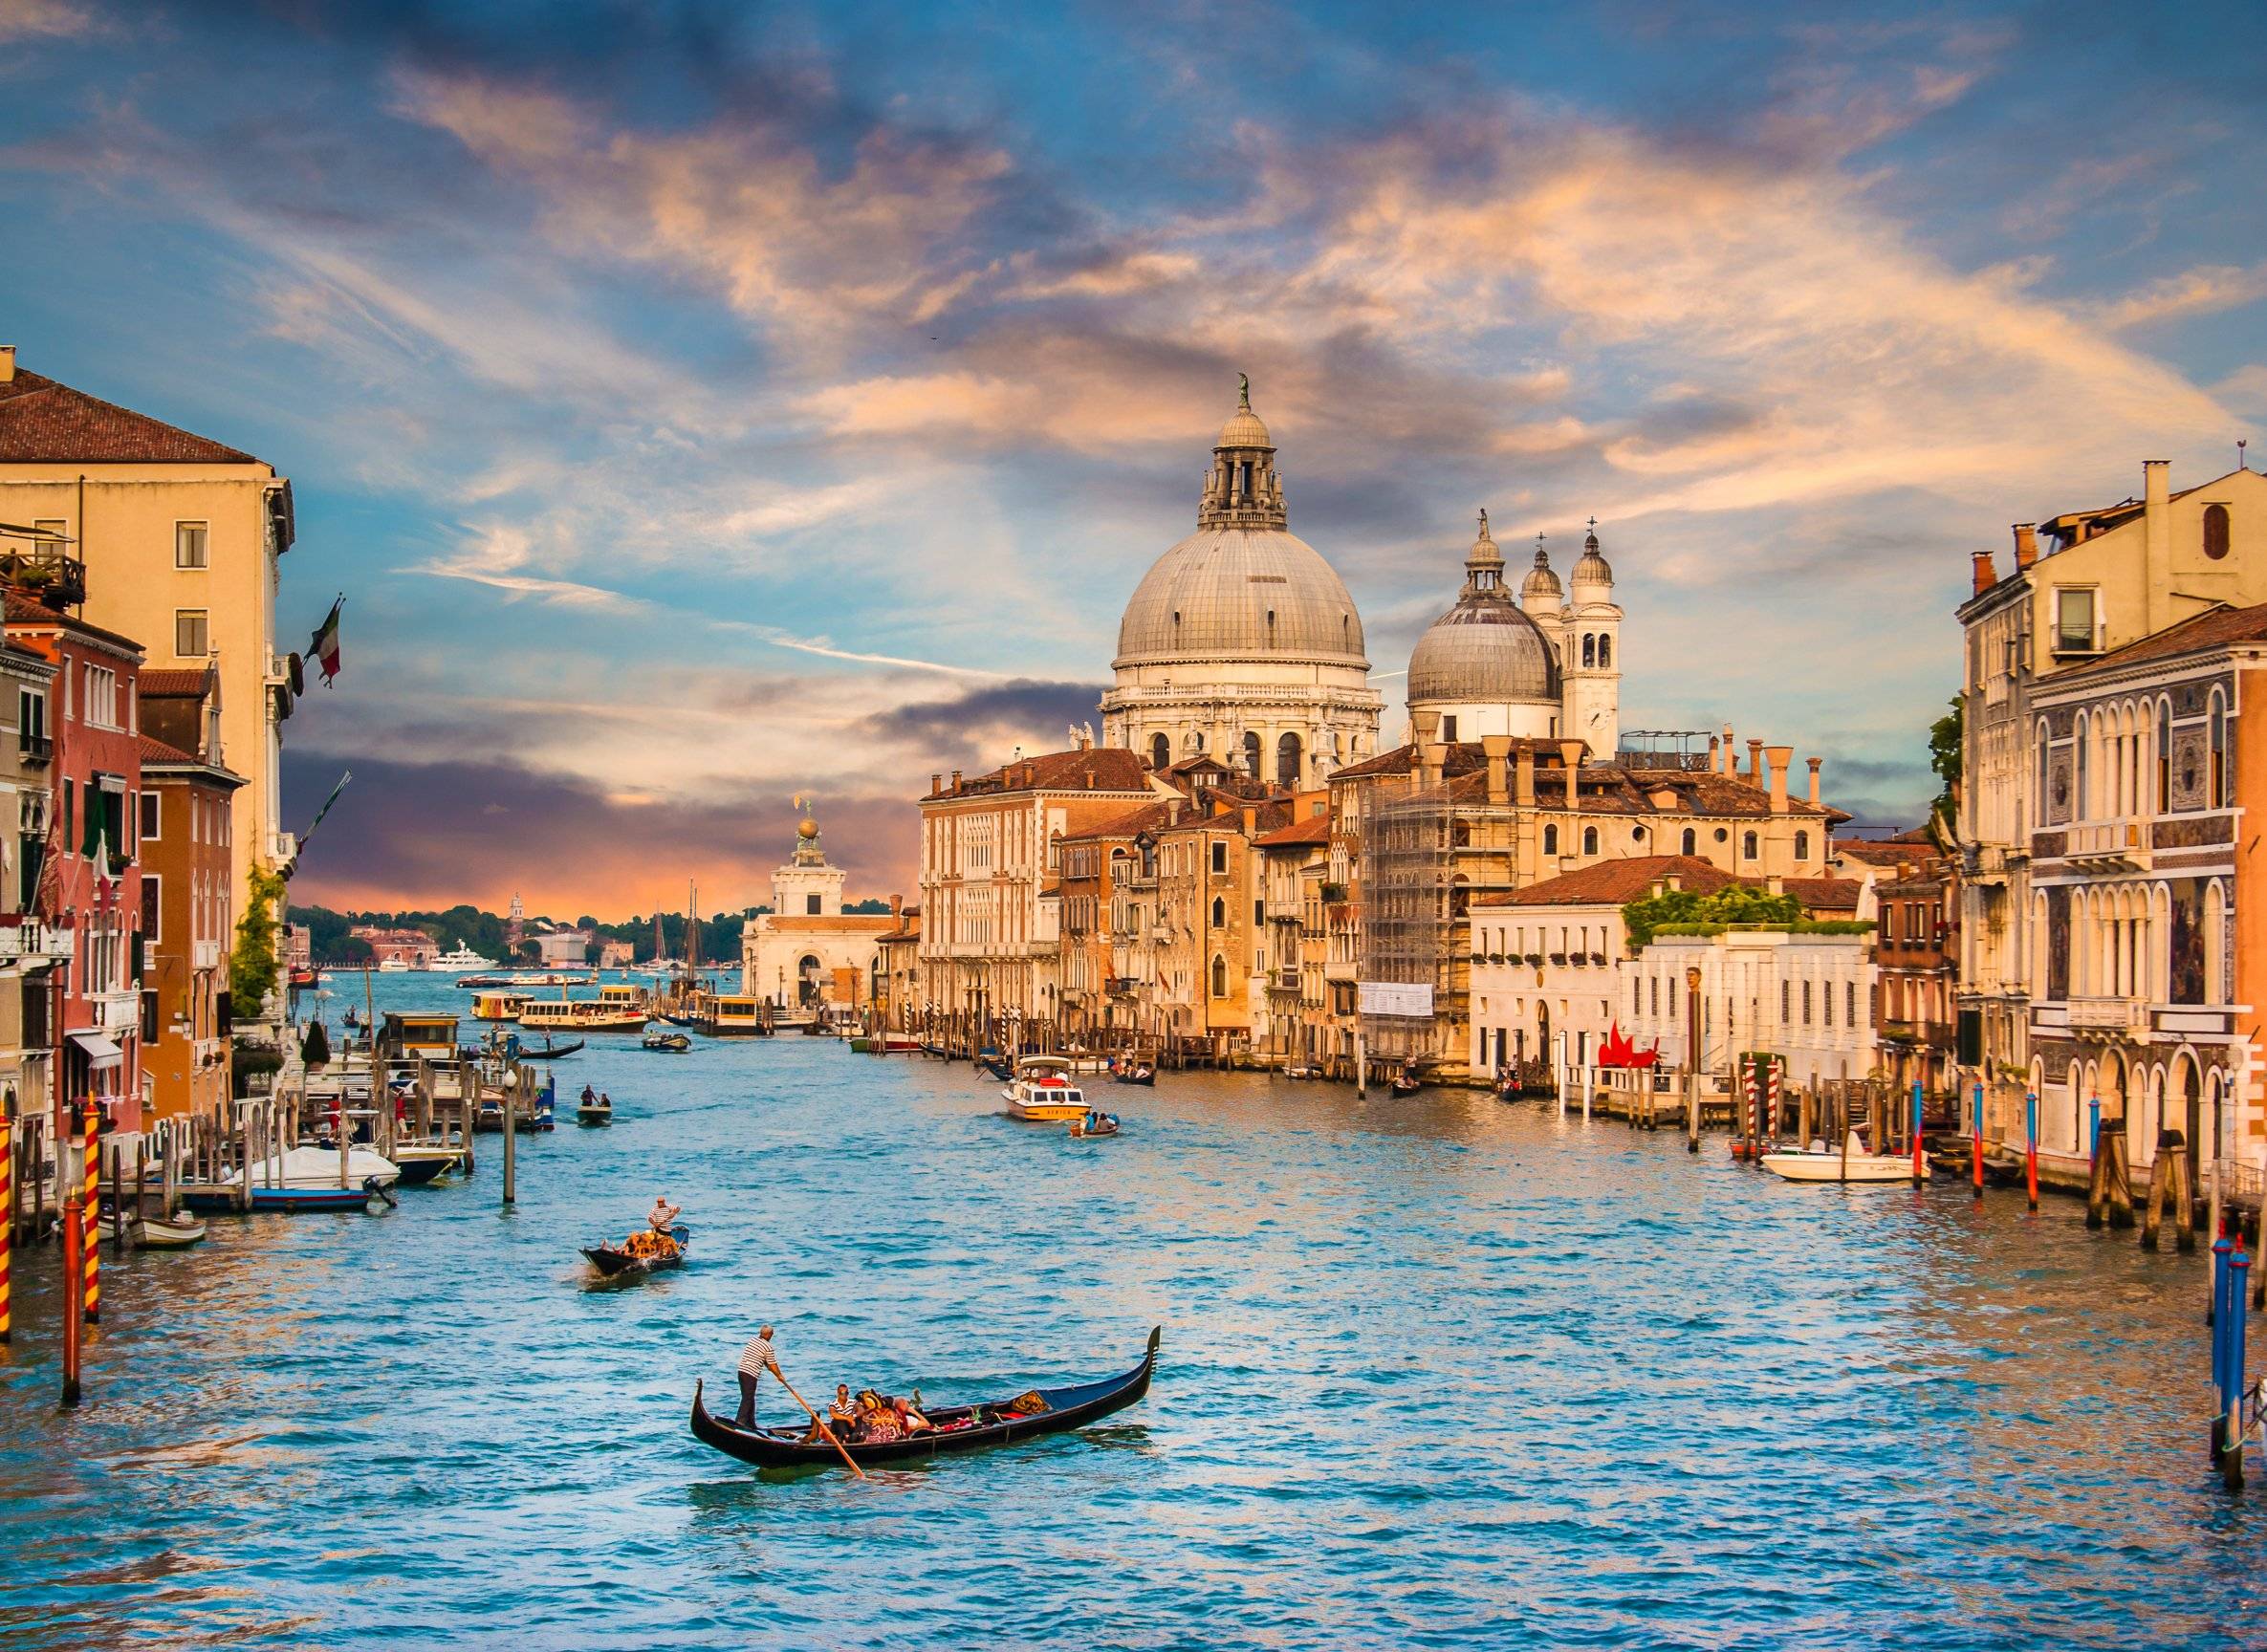 Venise, la gastronomie, les jardins secrets et les palais sur le Grand Canal